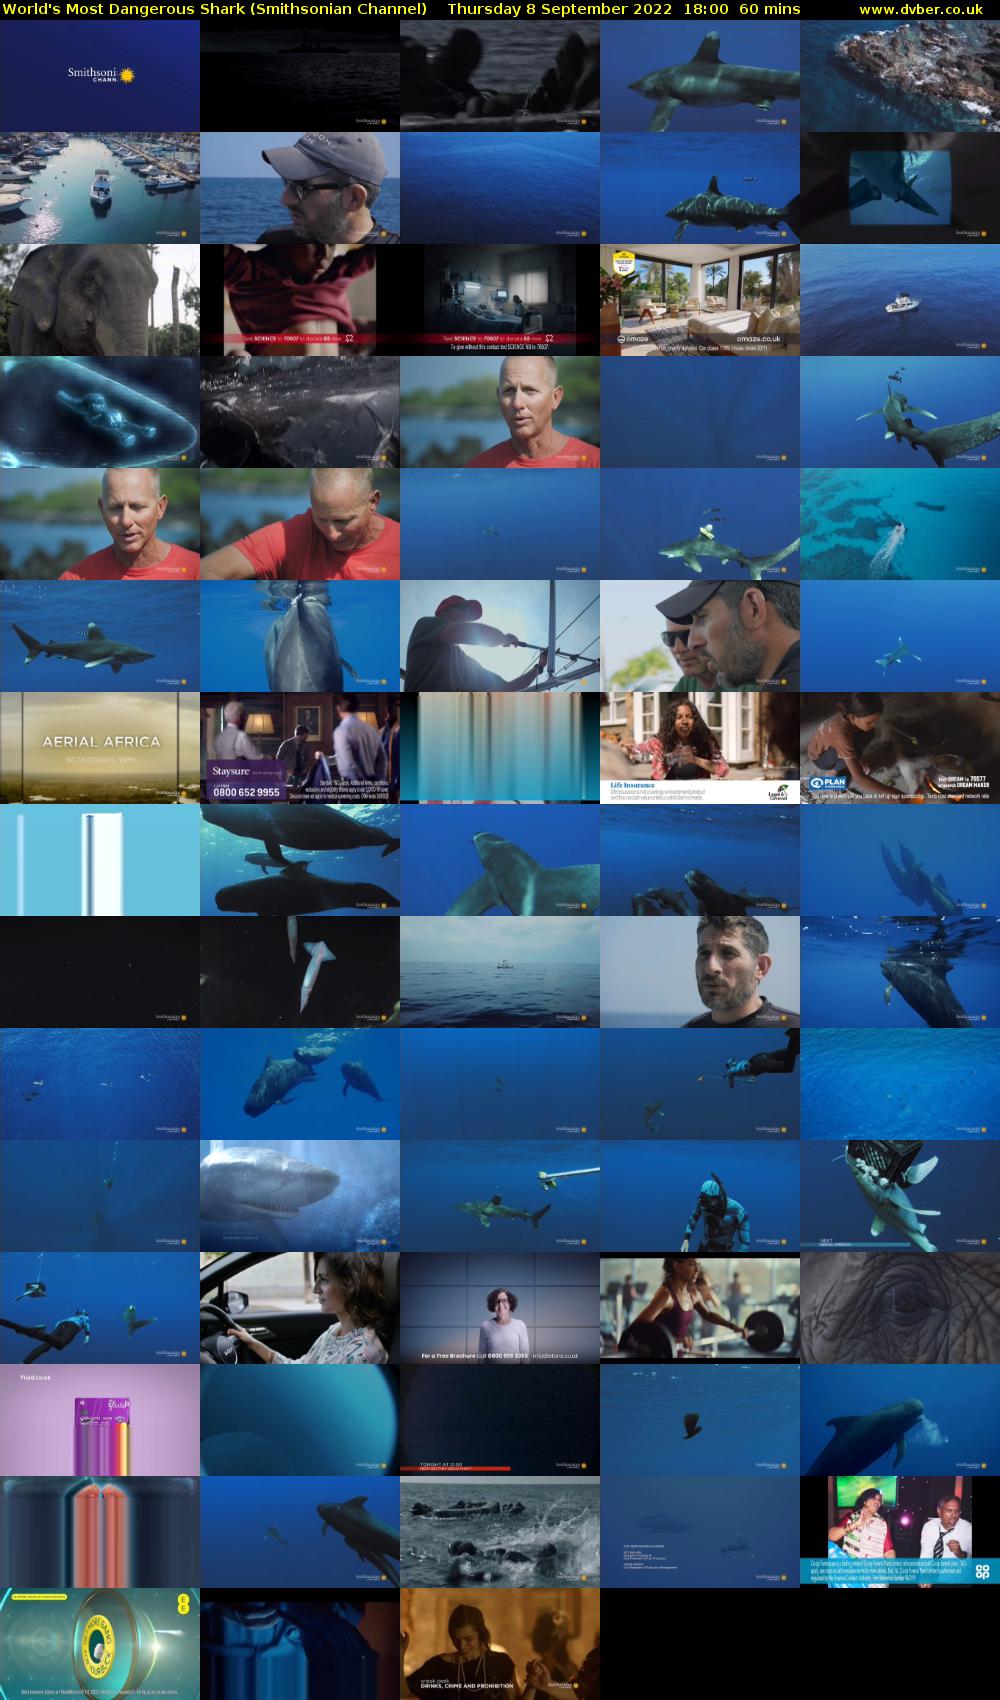 World's Most Dangerous Shark (Smithsonian Channel) Thursday 8 September 2022 18:00 - 19:00